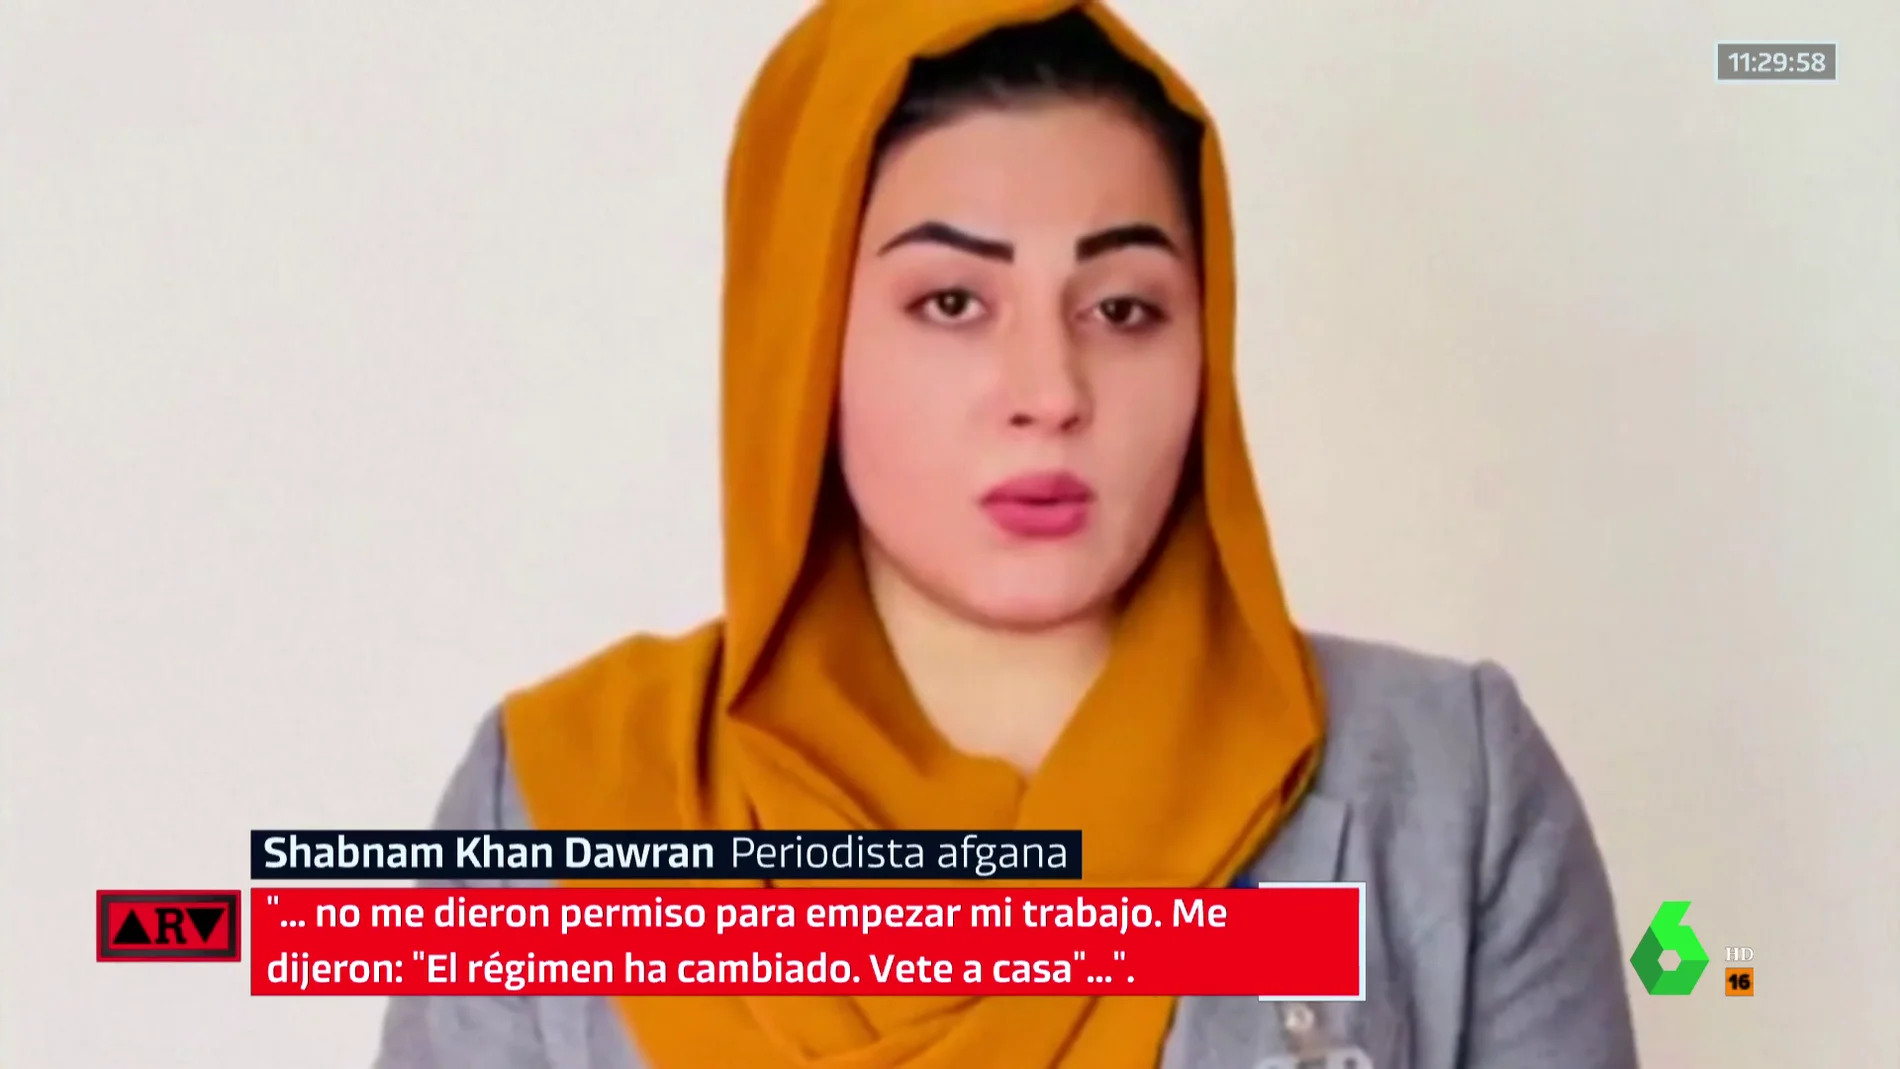 Los talibanes prohíben a las mujeres ir a trabajar en Afganistán: "Me dijeron 'el régimen ha cambiado, vete a casa'"